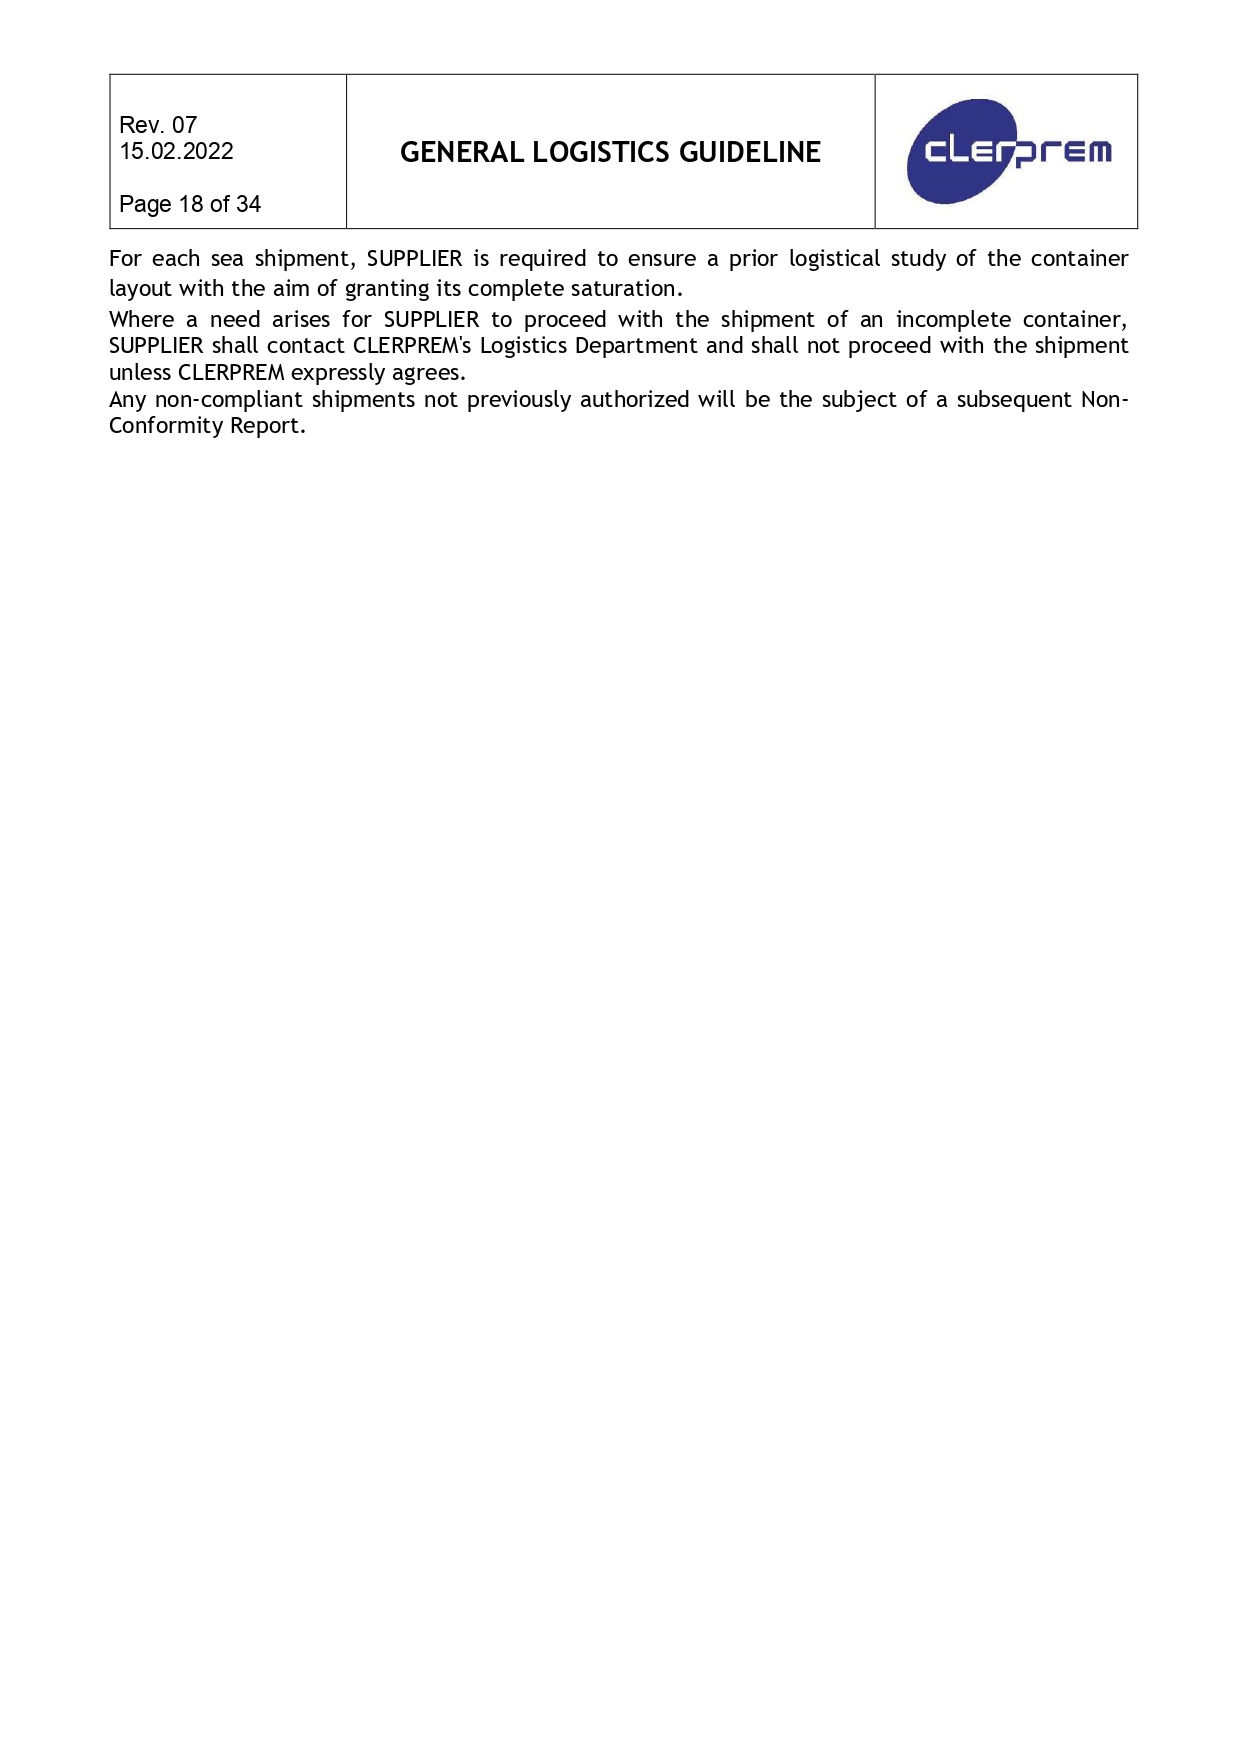 General Logistics Guideline Clerprem SpA Rev 08_page-0019